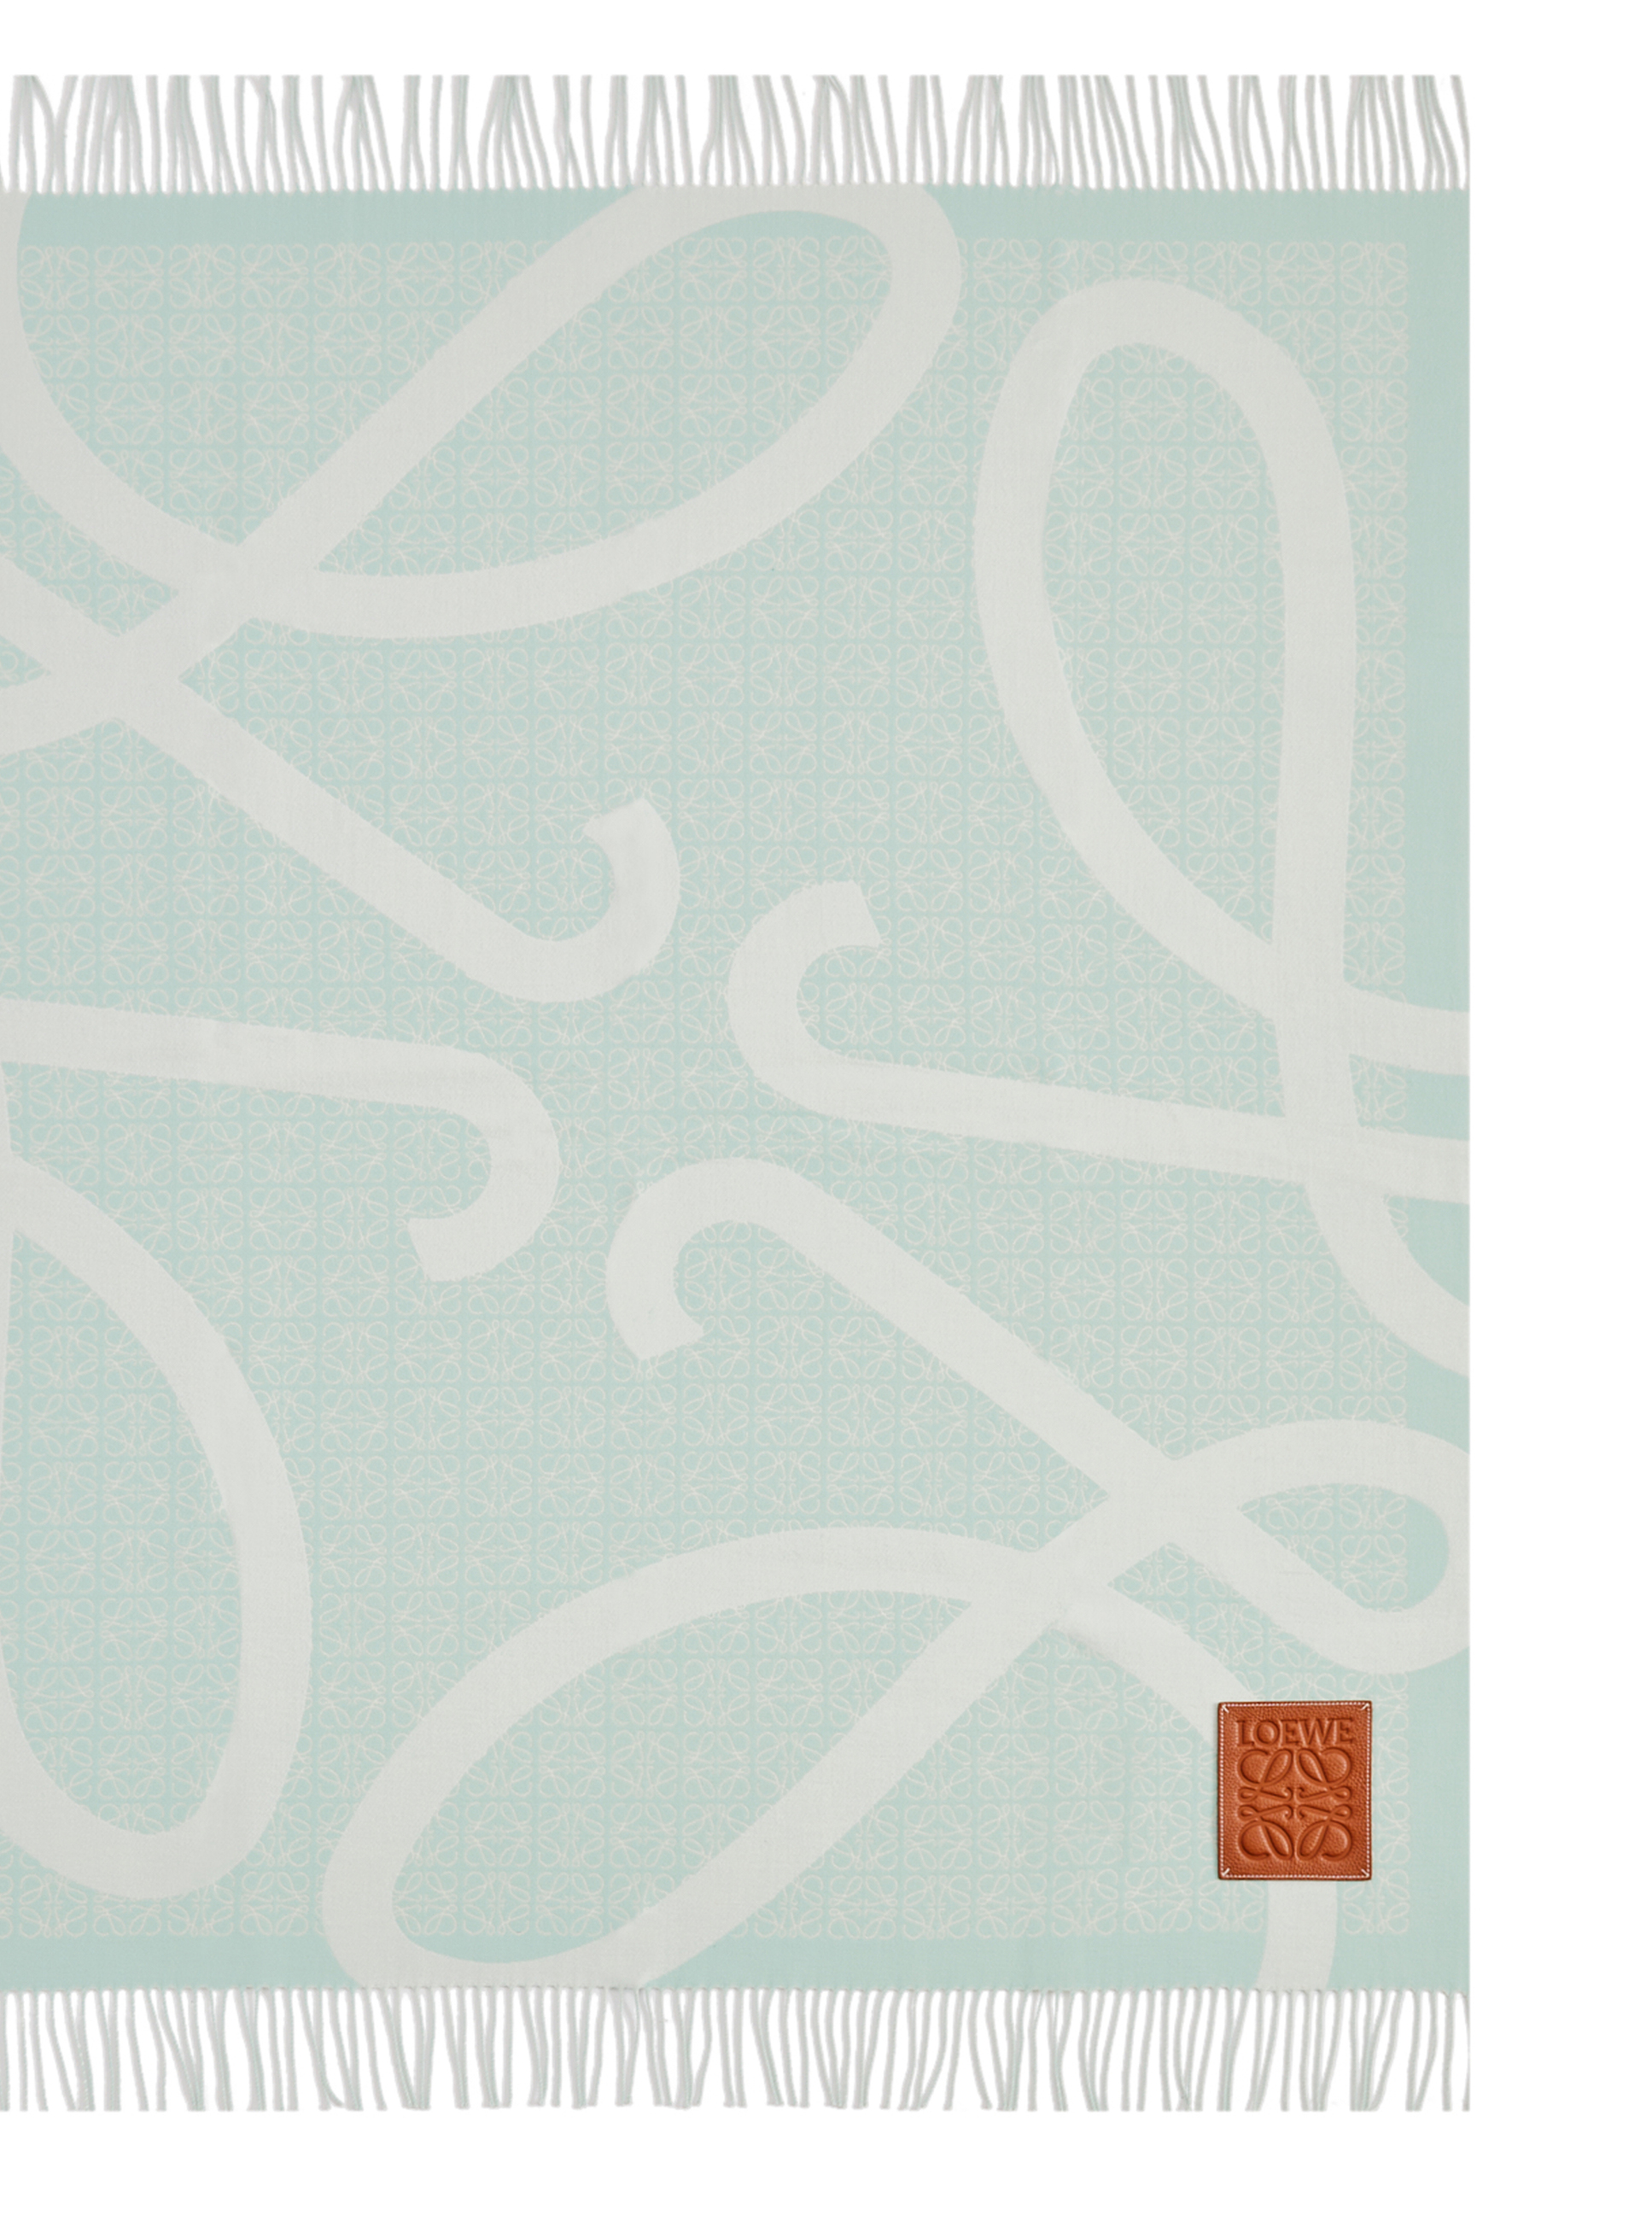 Loewe + Anagram Blanket in Wool, Pale Celadon Glaze